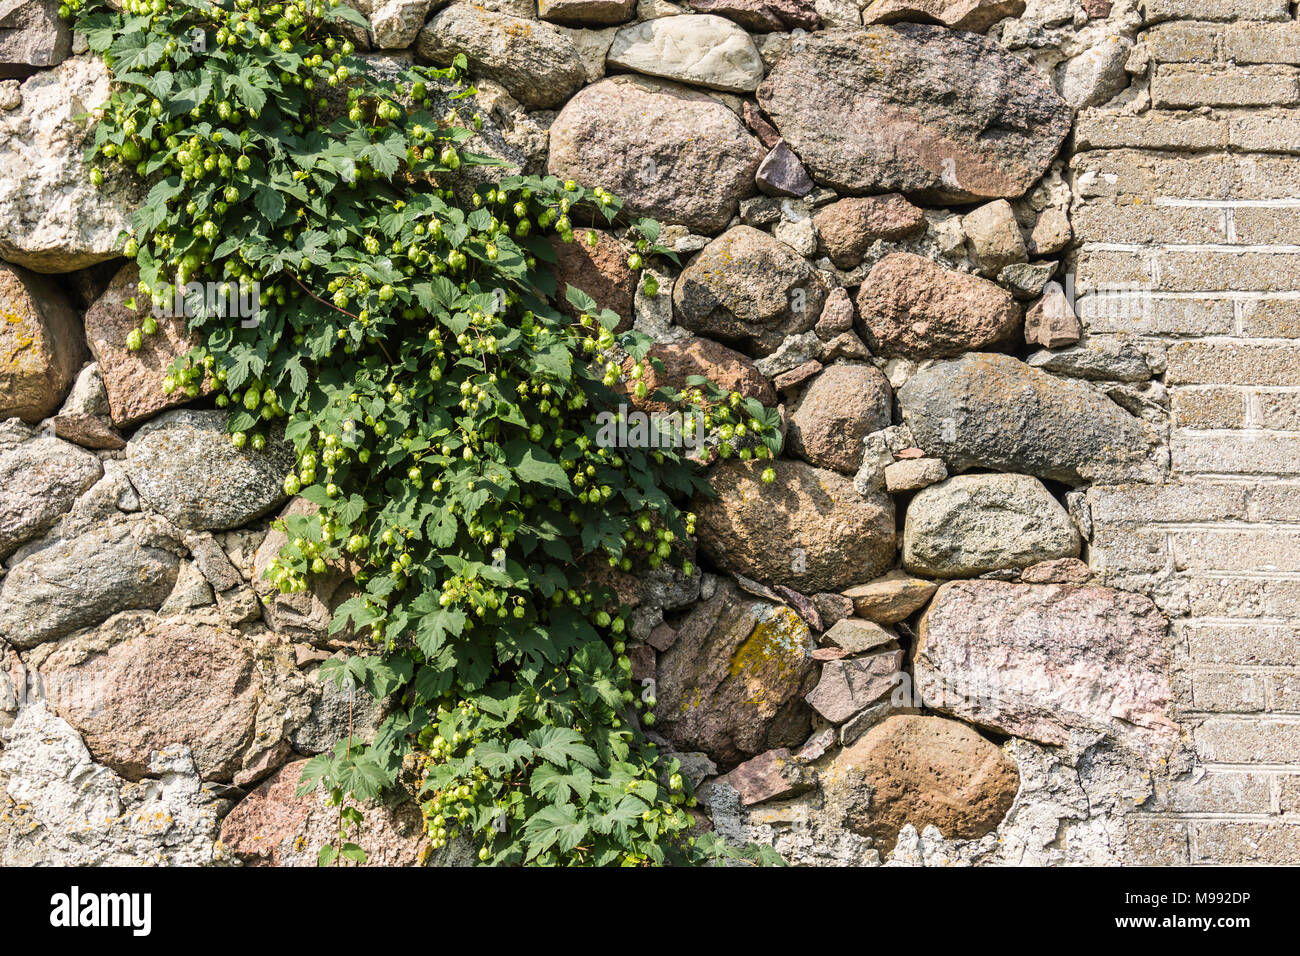 Stein Wand der alten Scheune, mit Hopfen überwuchert. Das Ende des Sommers. Podlasien, Polen. Stockfoto